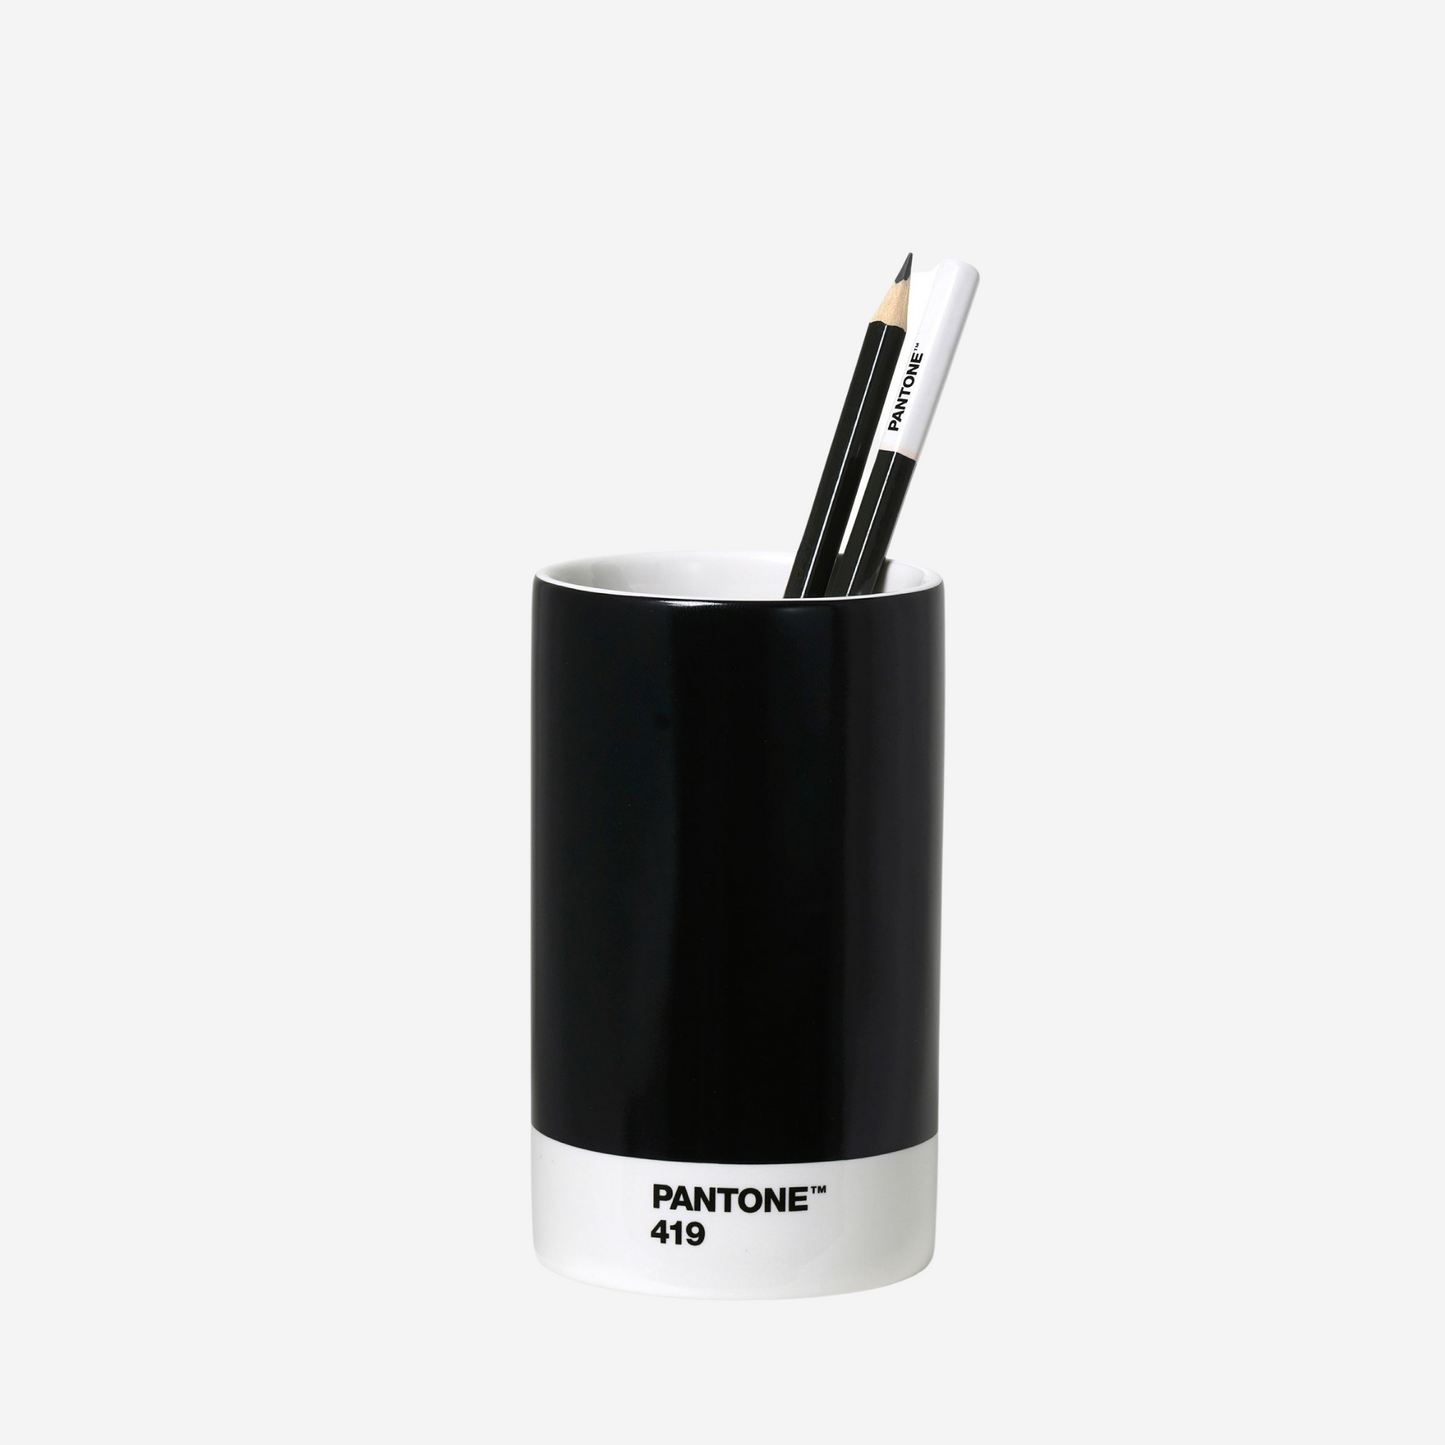 Pantone Pencil Cup - Black 419